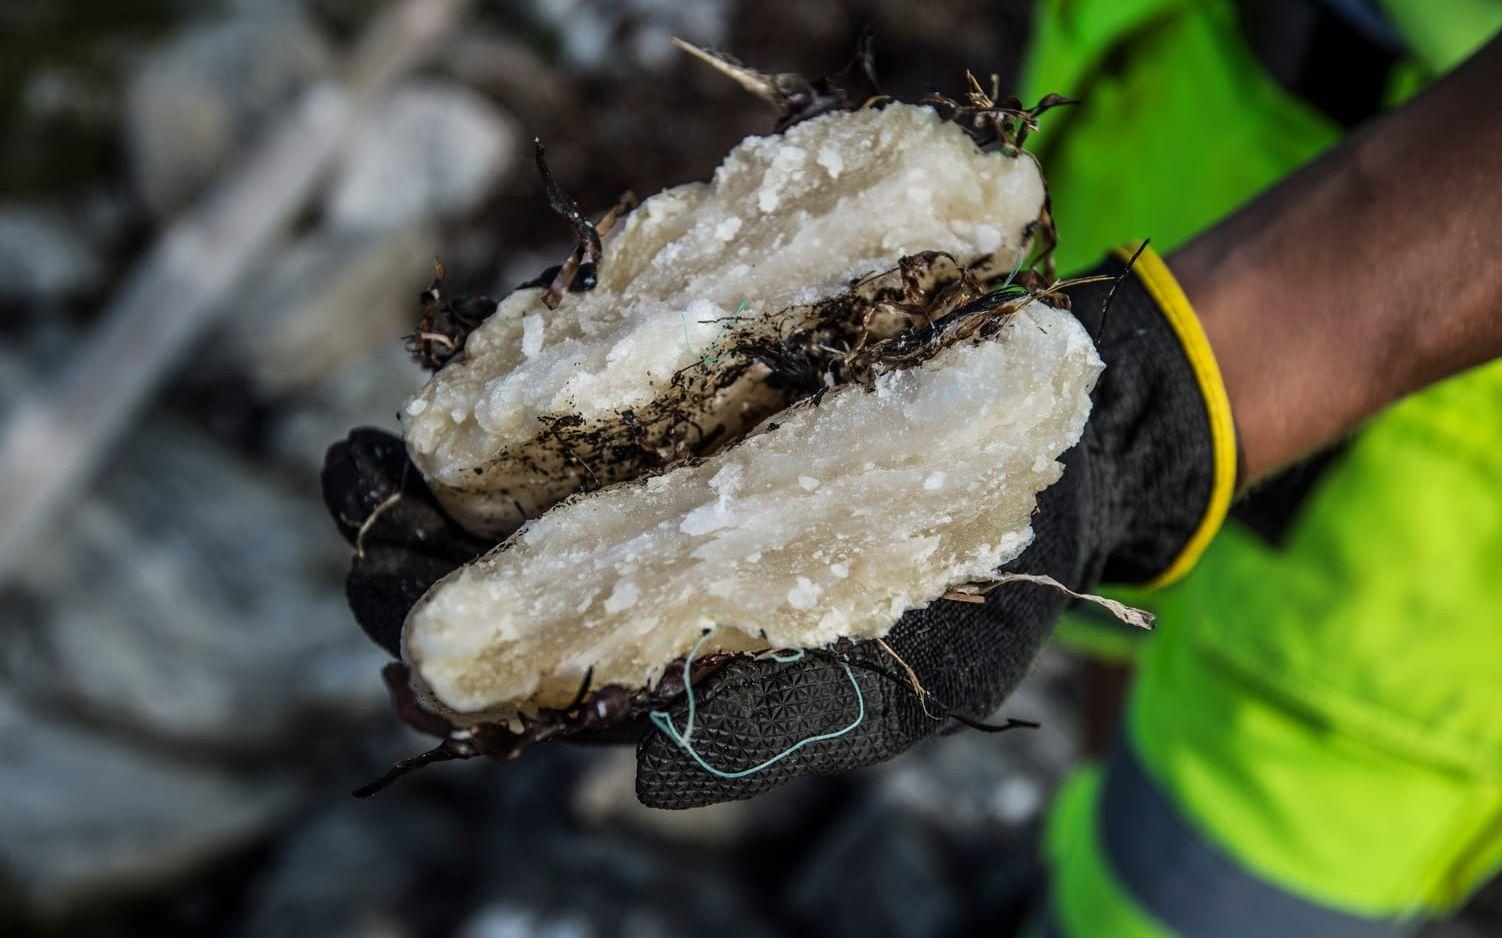 Stora klumpar med paraffin har sköljt upp på Galterö. Tidigare fynd av samma sak, exempelvis i Skåne, har visat sig härstamma från fartyg som rensat sina tankar i havet. Bild: Olof Ohlsson